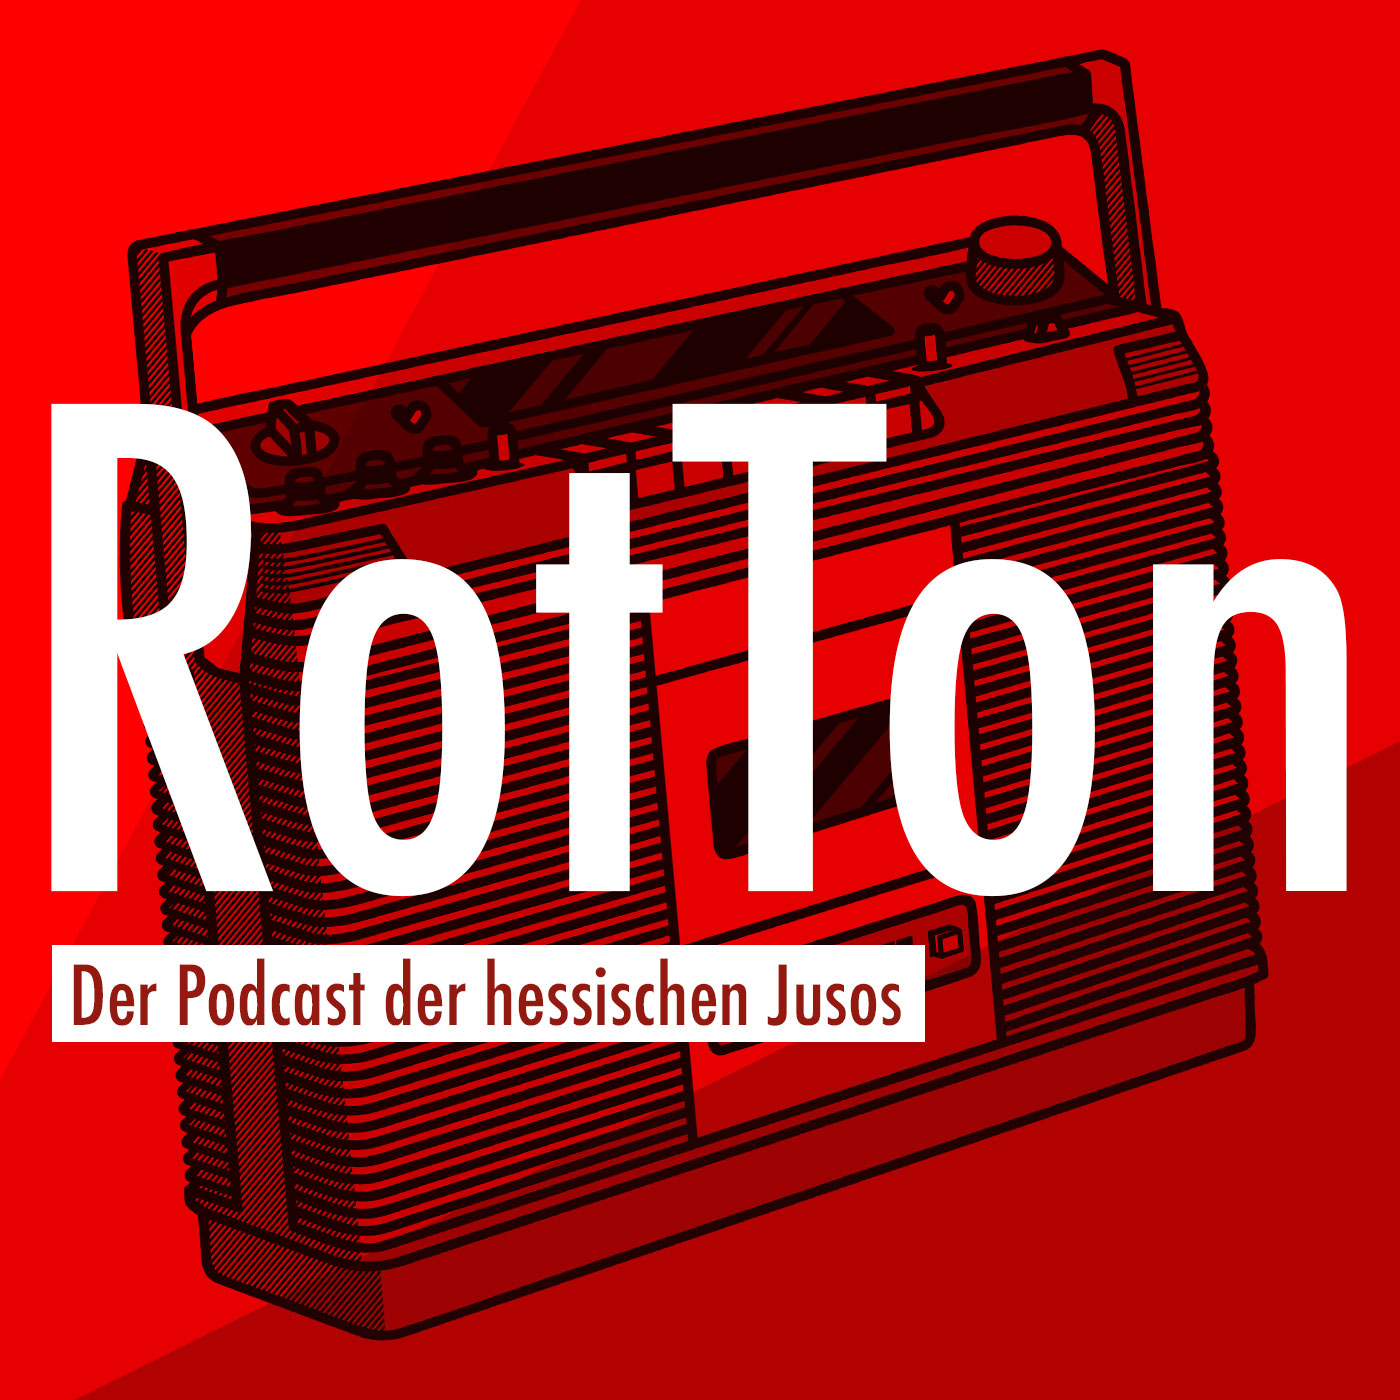 RotTon - Der Podcast der Jusos Hessen